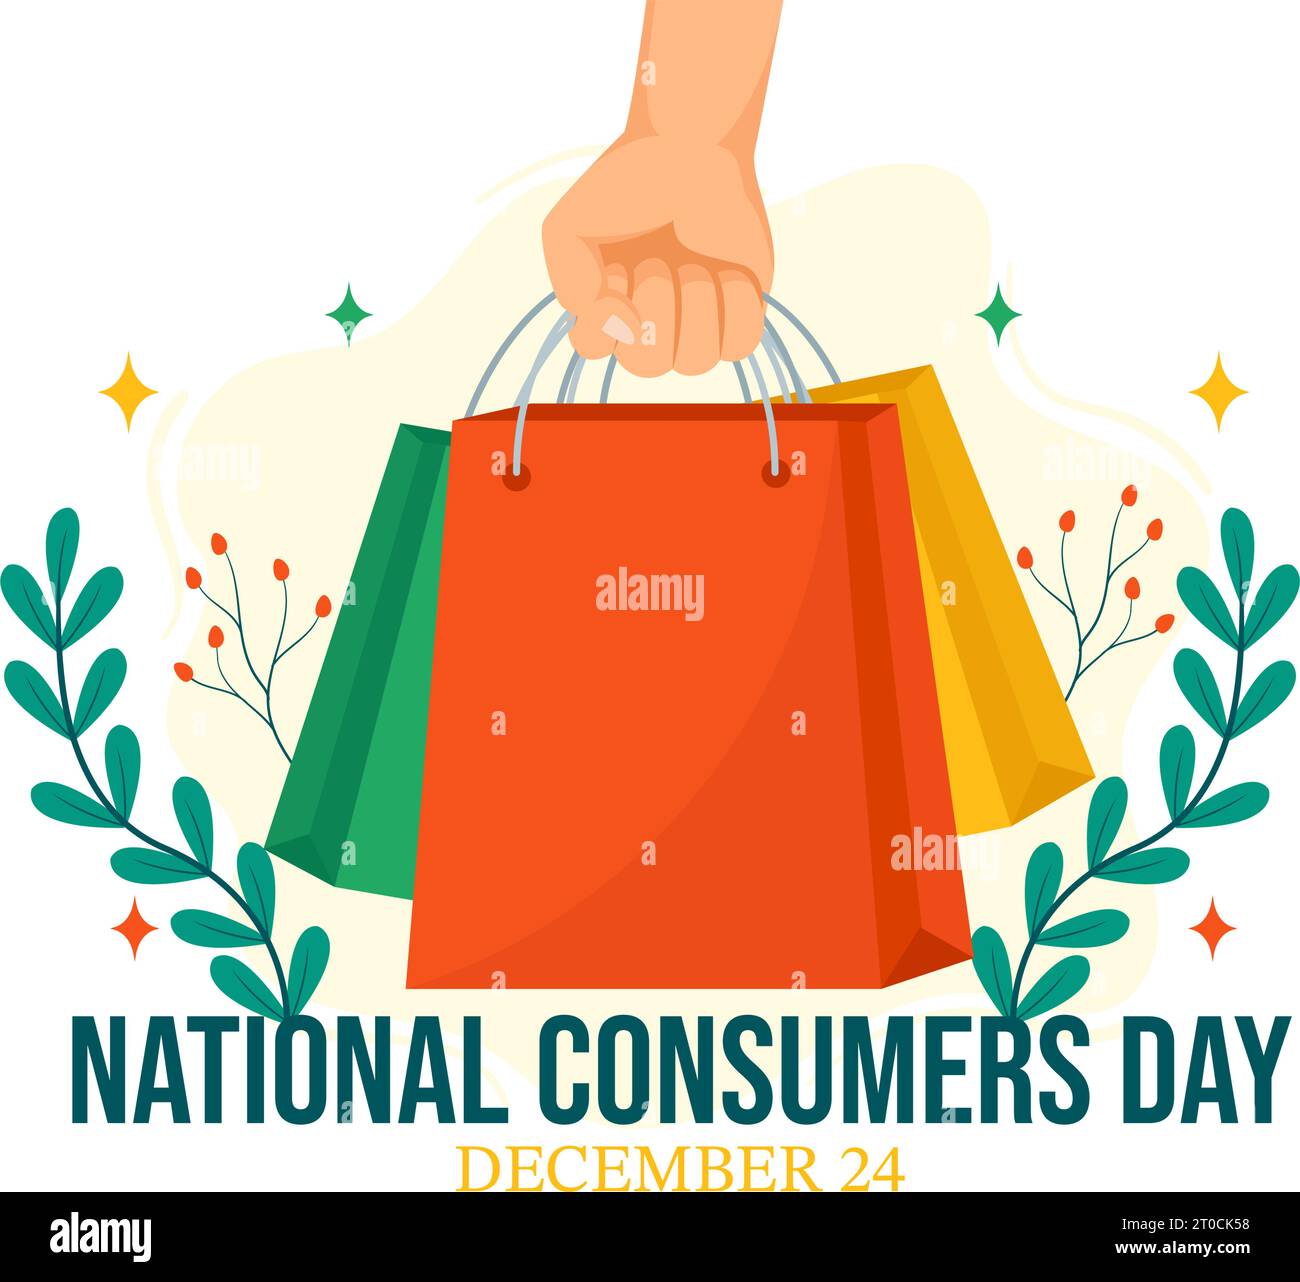 Illustrazione vettoriale della giornata nazionale del consumatore con carrello e sacchetto di carta per promozione, banner o poster con disegno di sfondo di cartone animato piatto Illustrazione Vettoriale